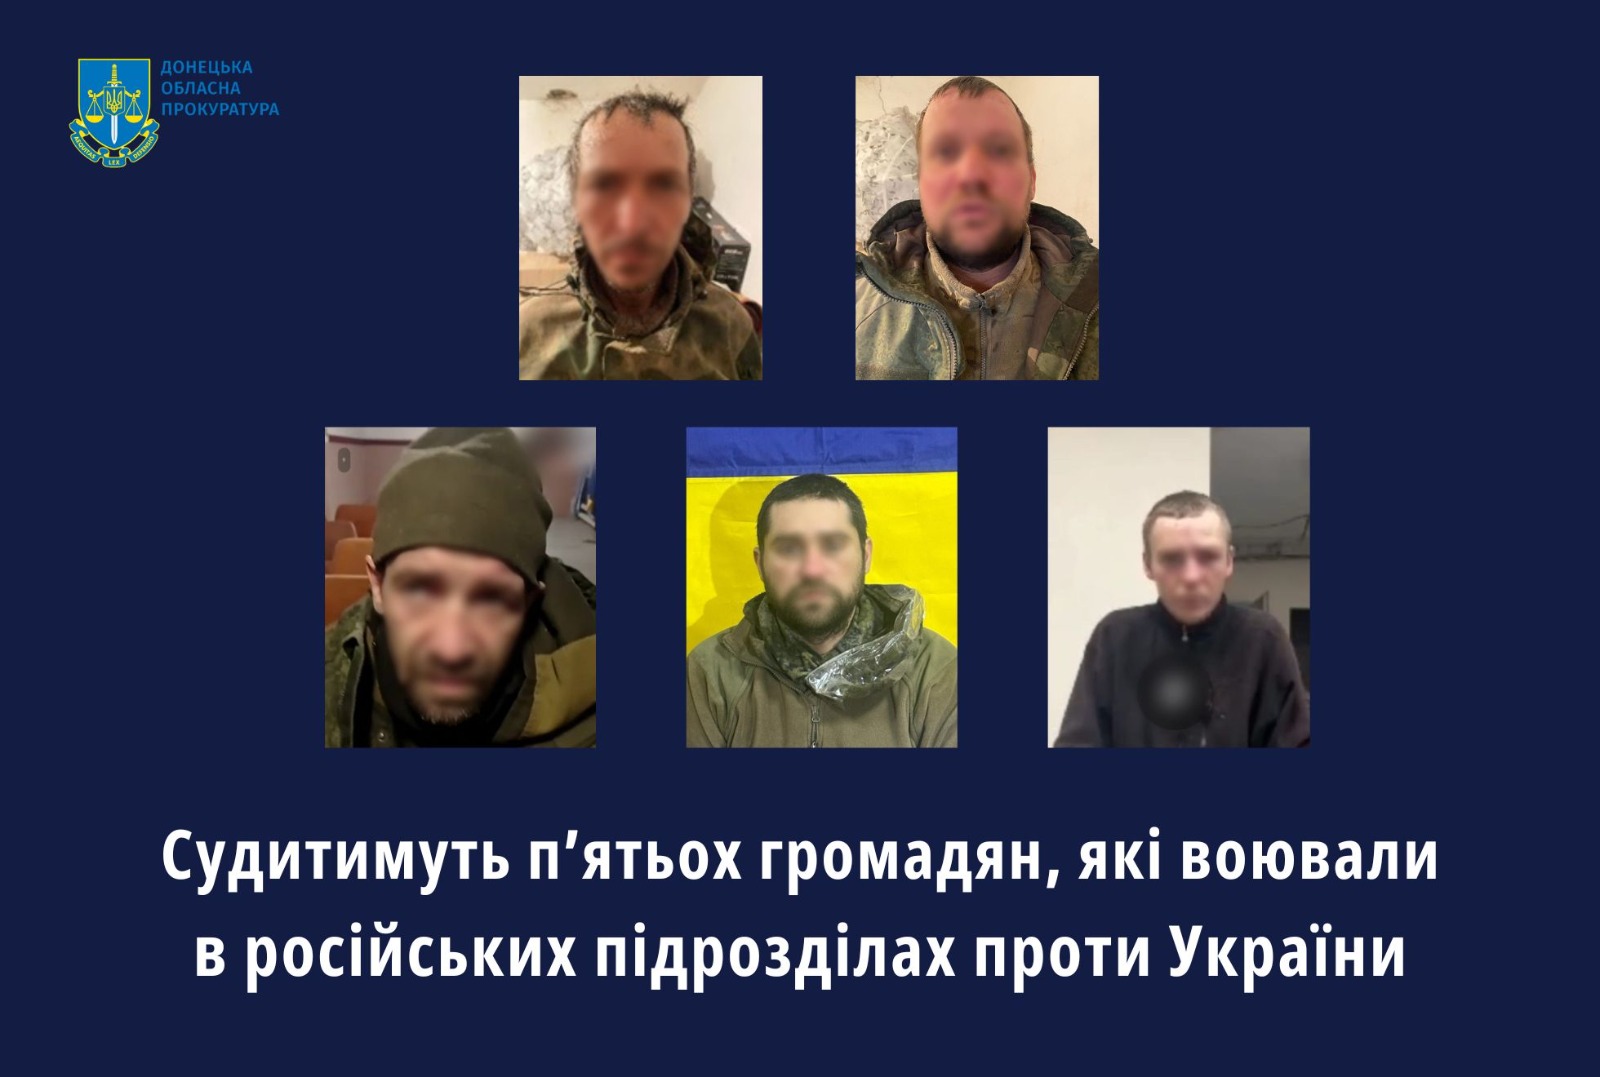 Судитимуть п’ятьох громадян, які воювали в російських підрозділах проти України